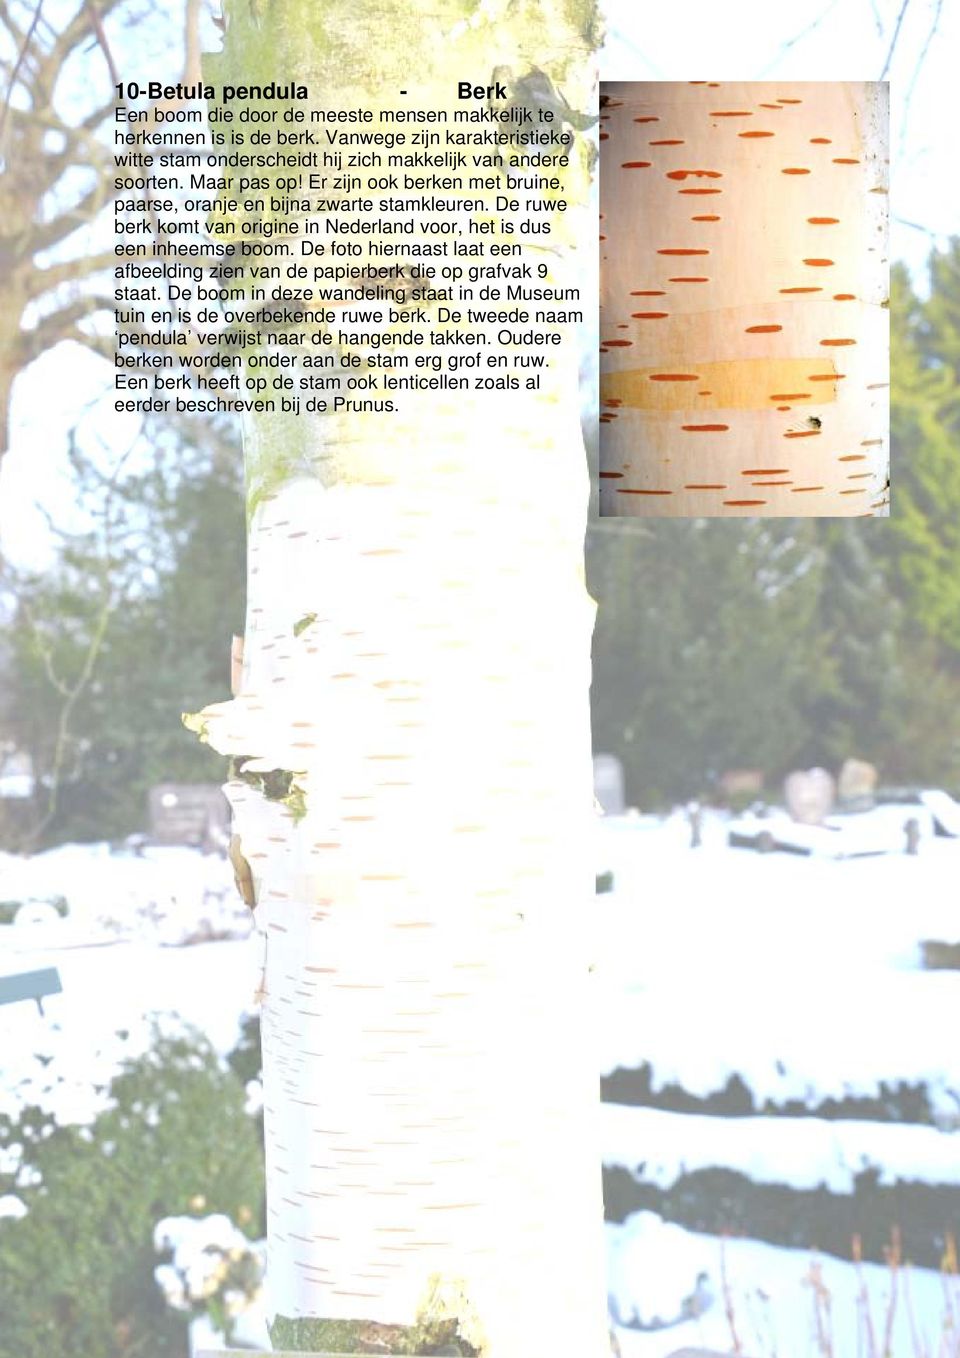 De ruwe berk komt van origine in Nederland voor, het is dus een inheemse boom. De foto hiernaast laat een afbeelding zien van de papierberk die op grafvak 9 staat.